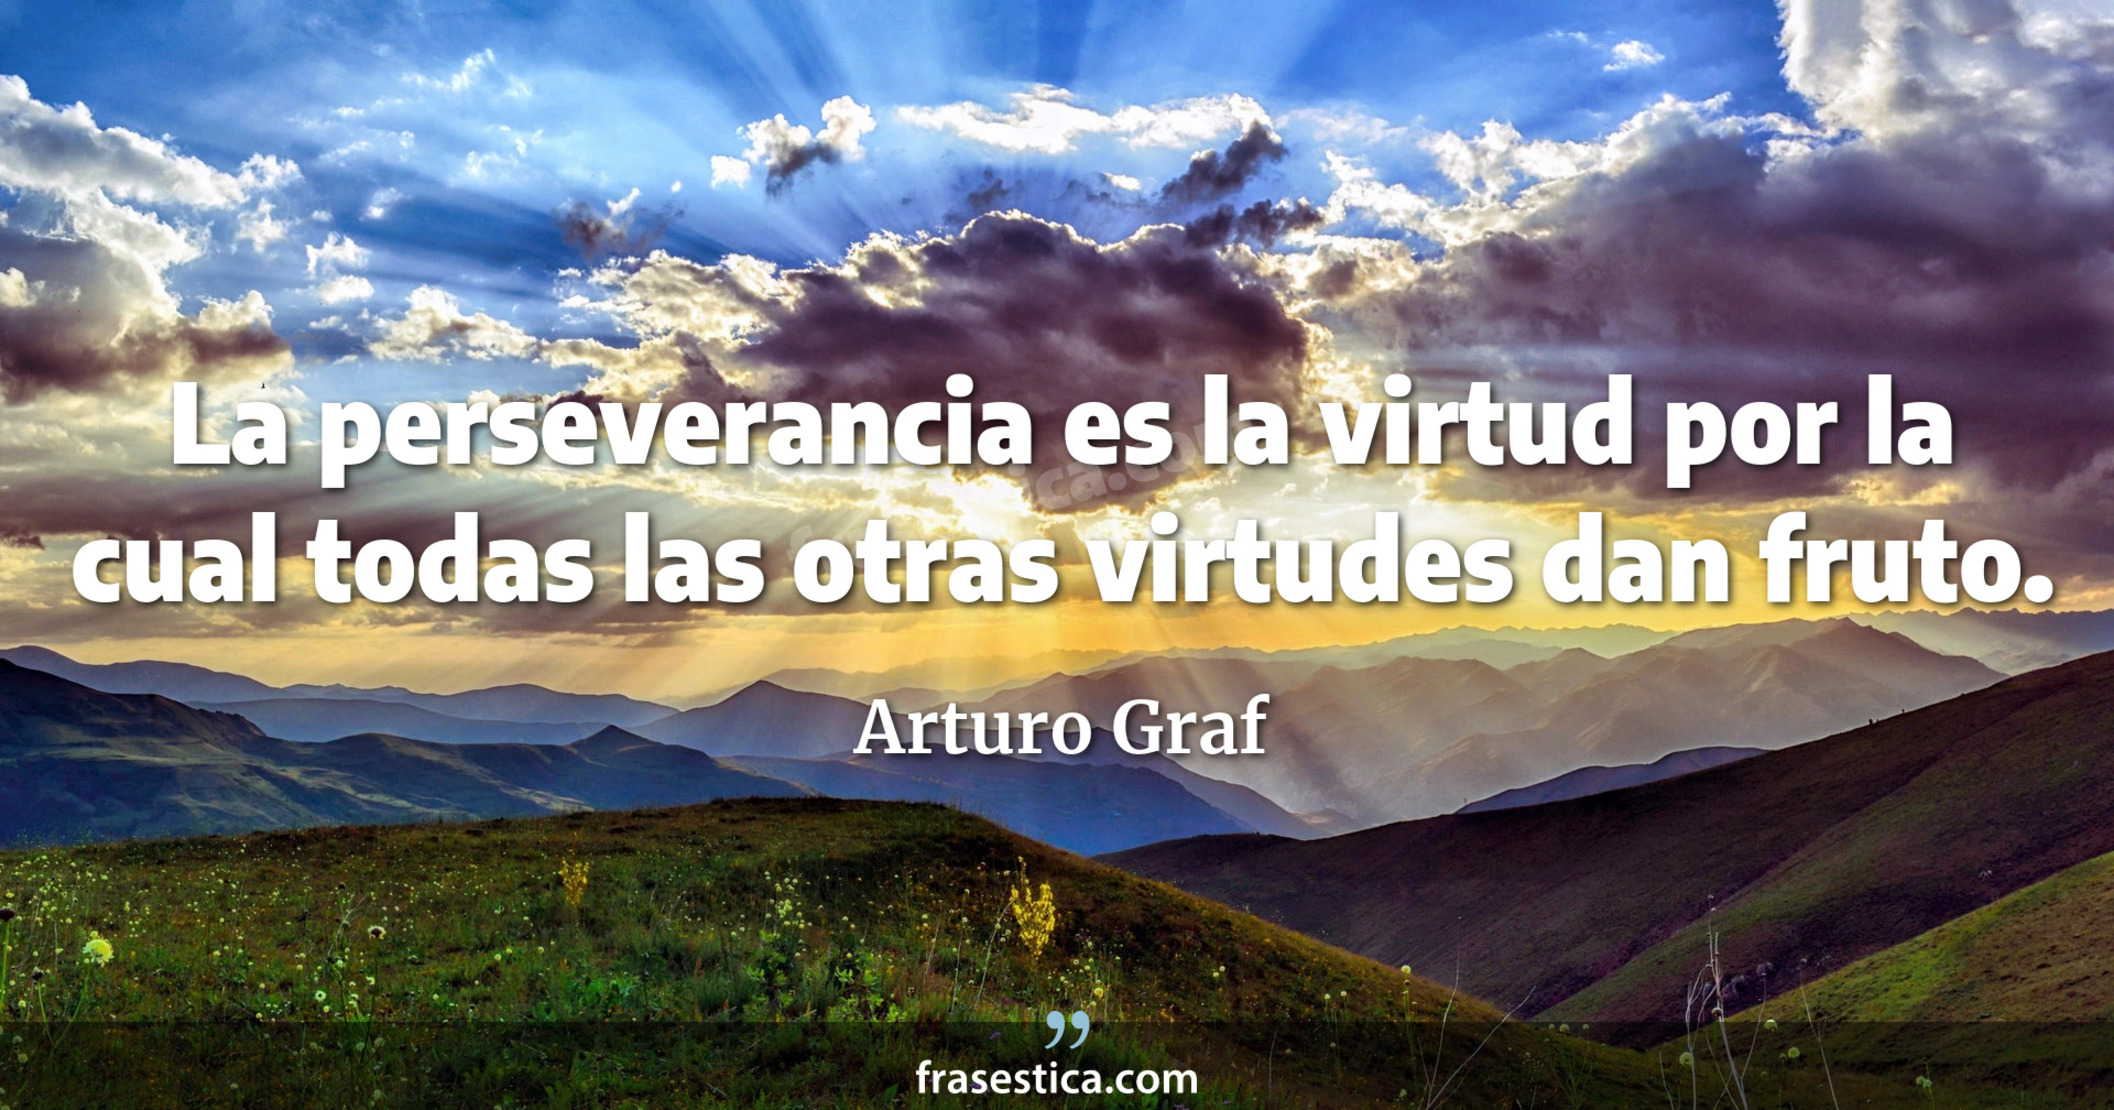 La perseverancia es la virtud por la cual todas las otras virtudes dan fruto. - Arturo Graf